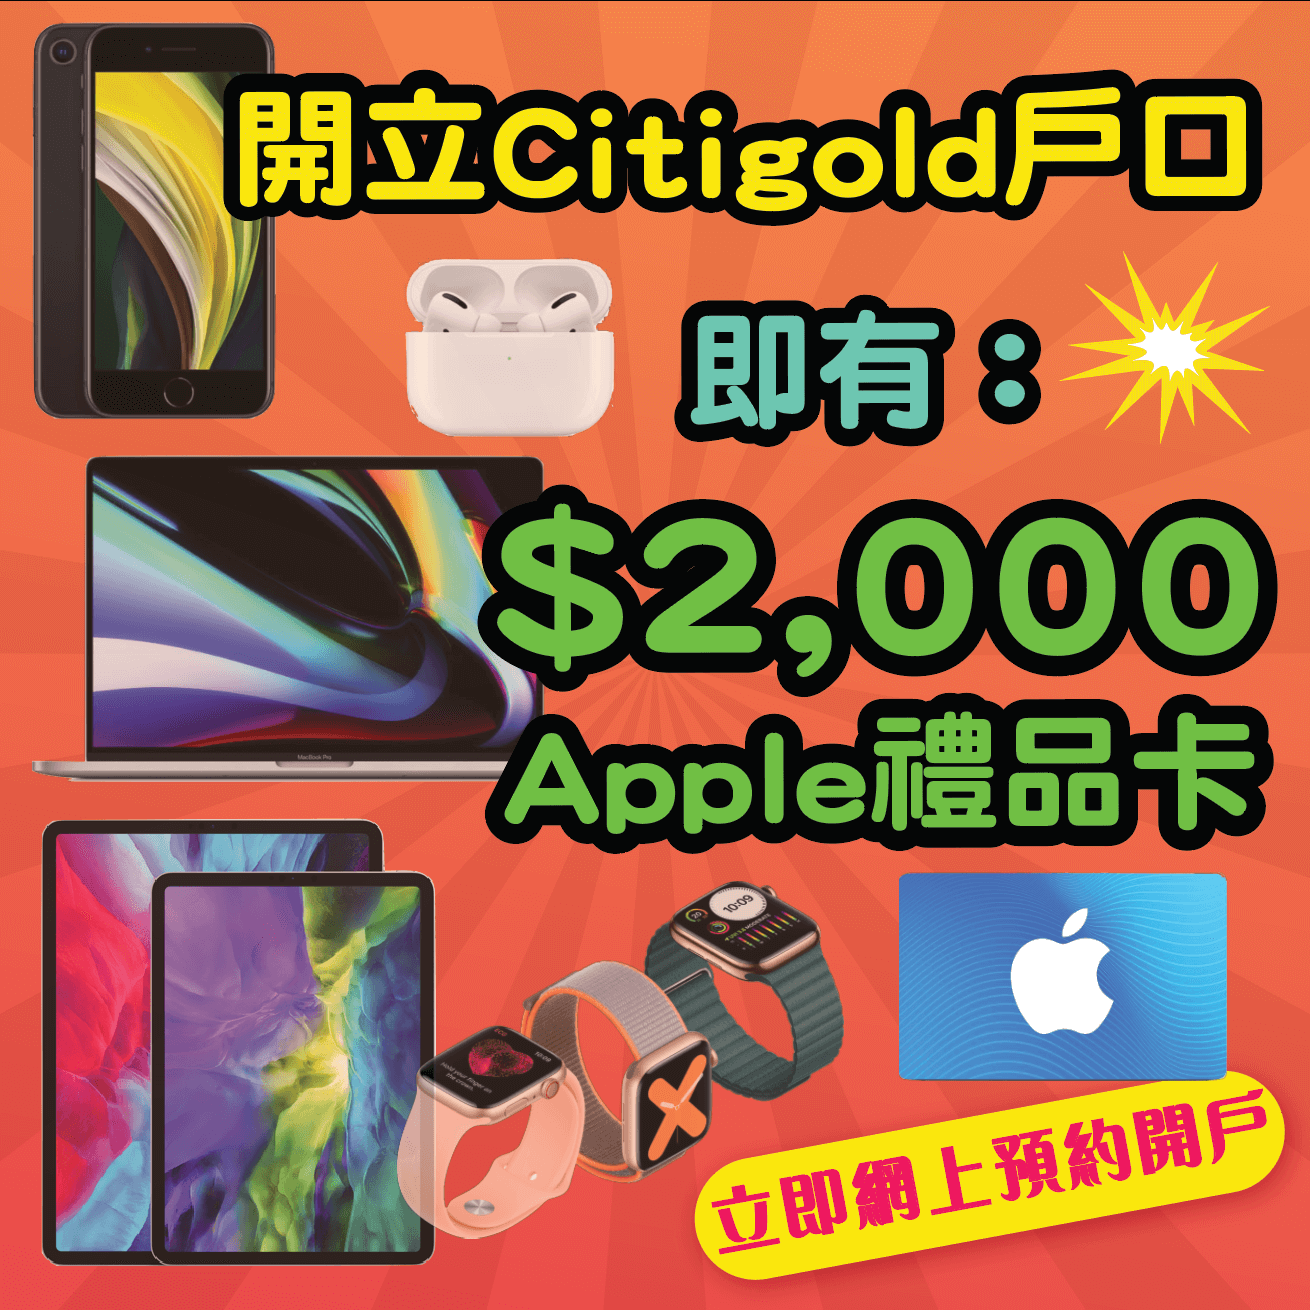 【開戶即有額外$2,000 Apple Gift Card】11月30日或之前經小斯申請Citigold有額外$2,000 Apple Gift Card！開戶仲有高達$38,800獎賞！